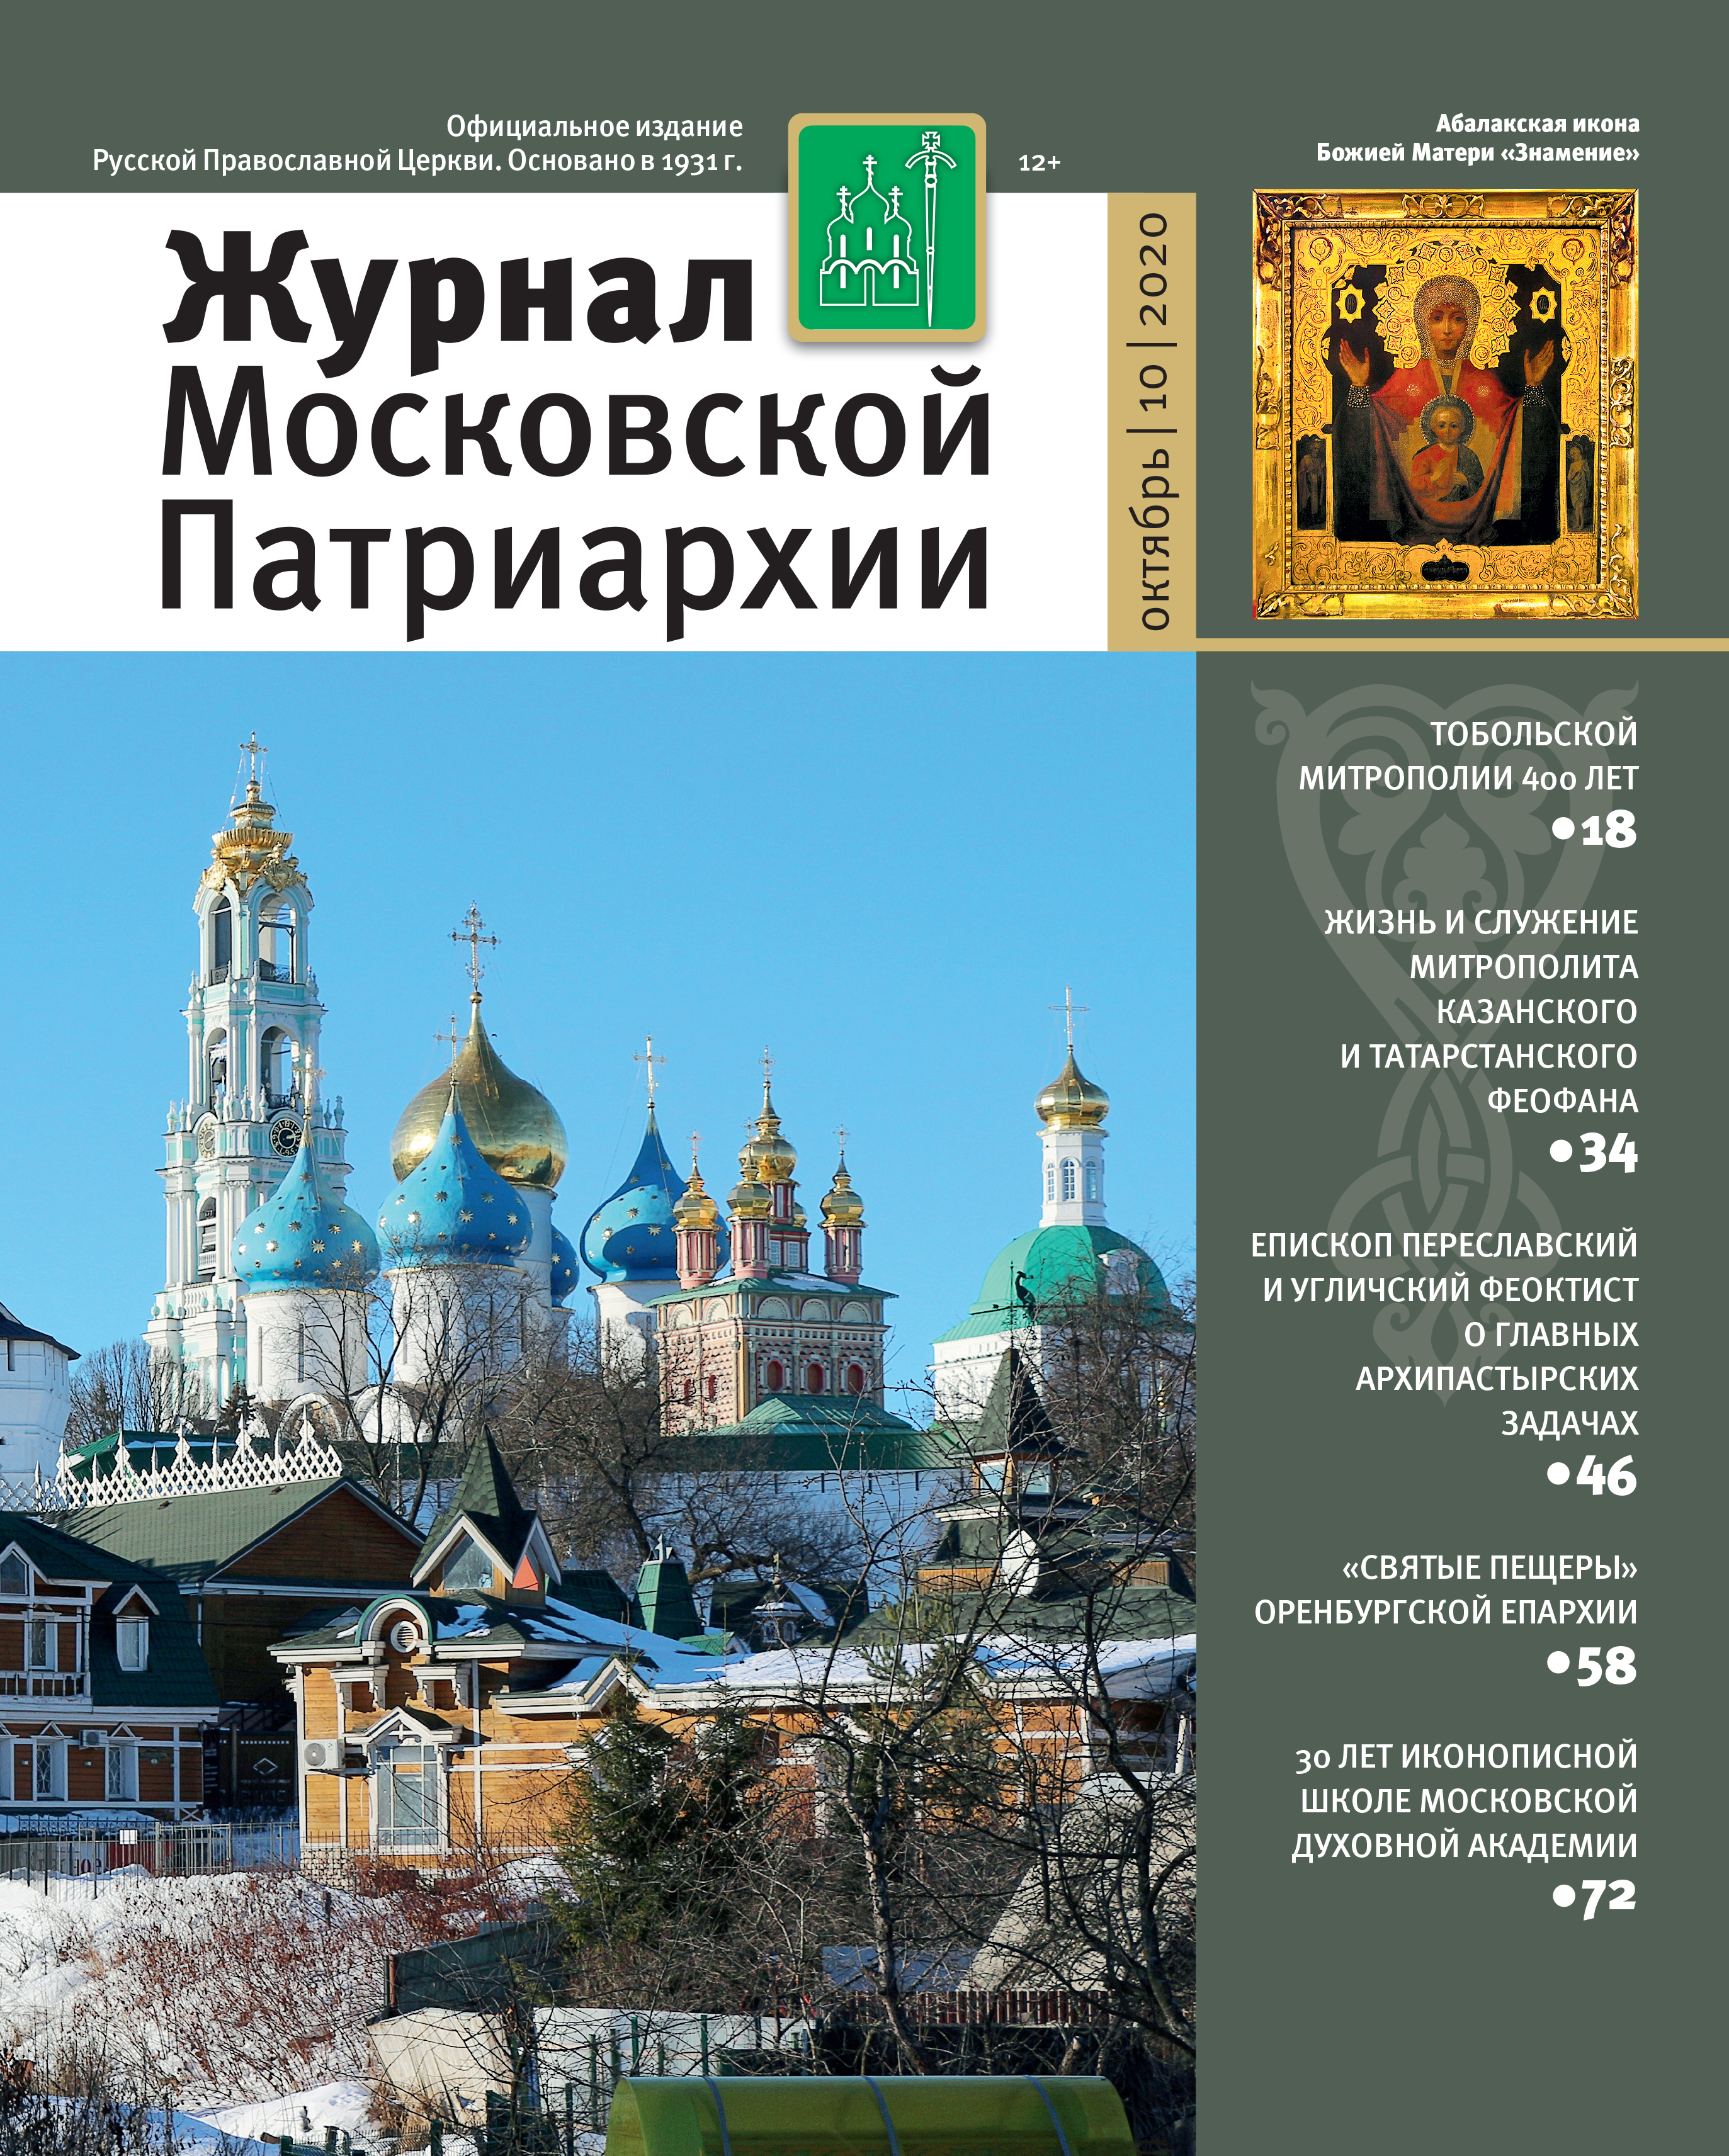 Вышел в свет «Журнал Московской Патриархии» №10 за 2020 год